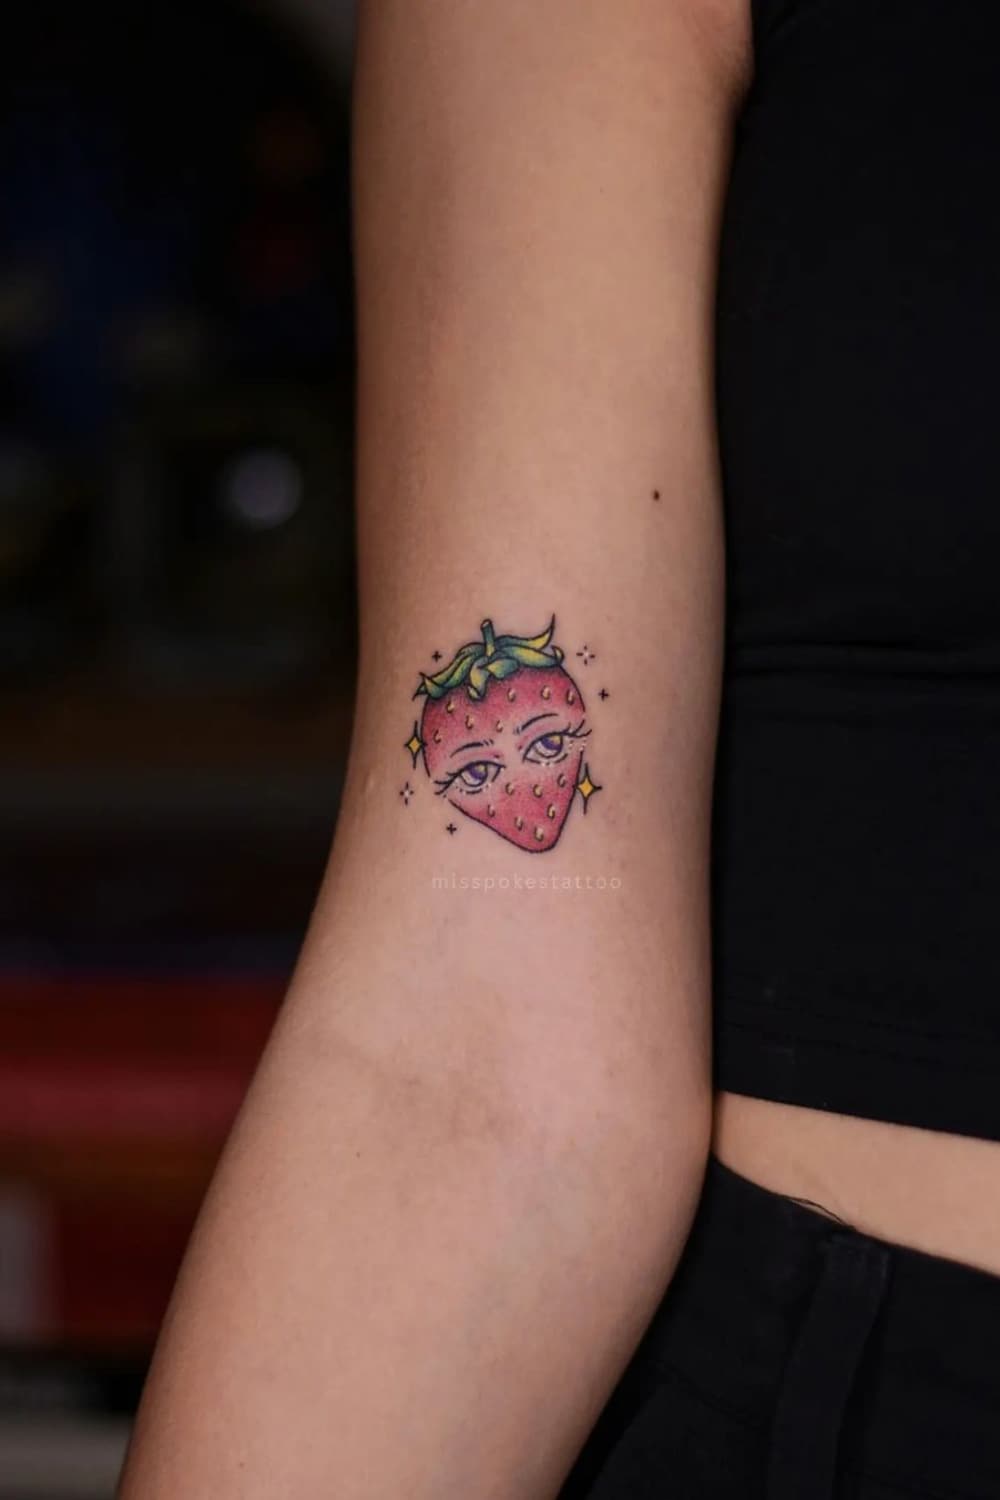 Anthropomorphic Strawberry Tattoo